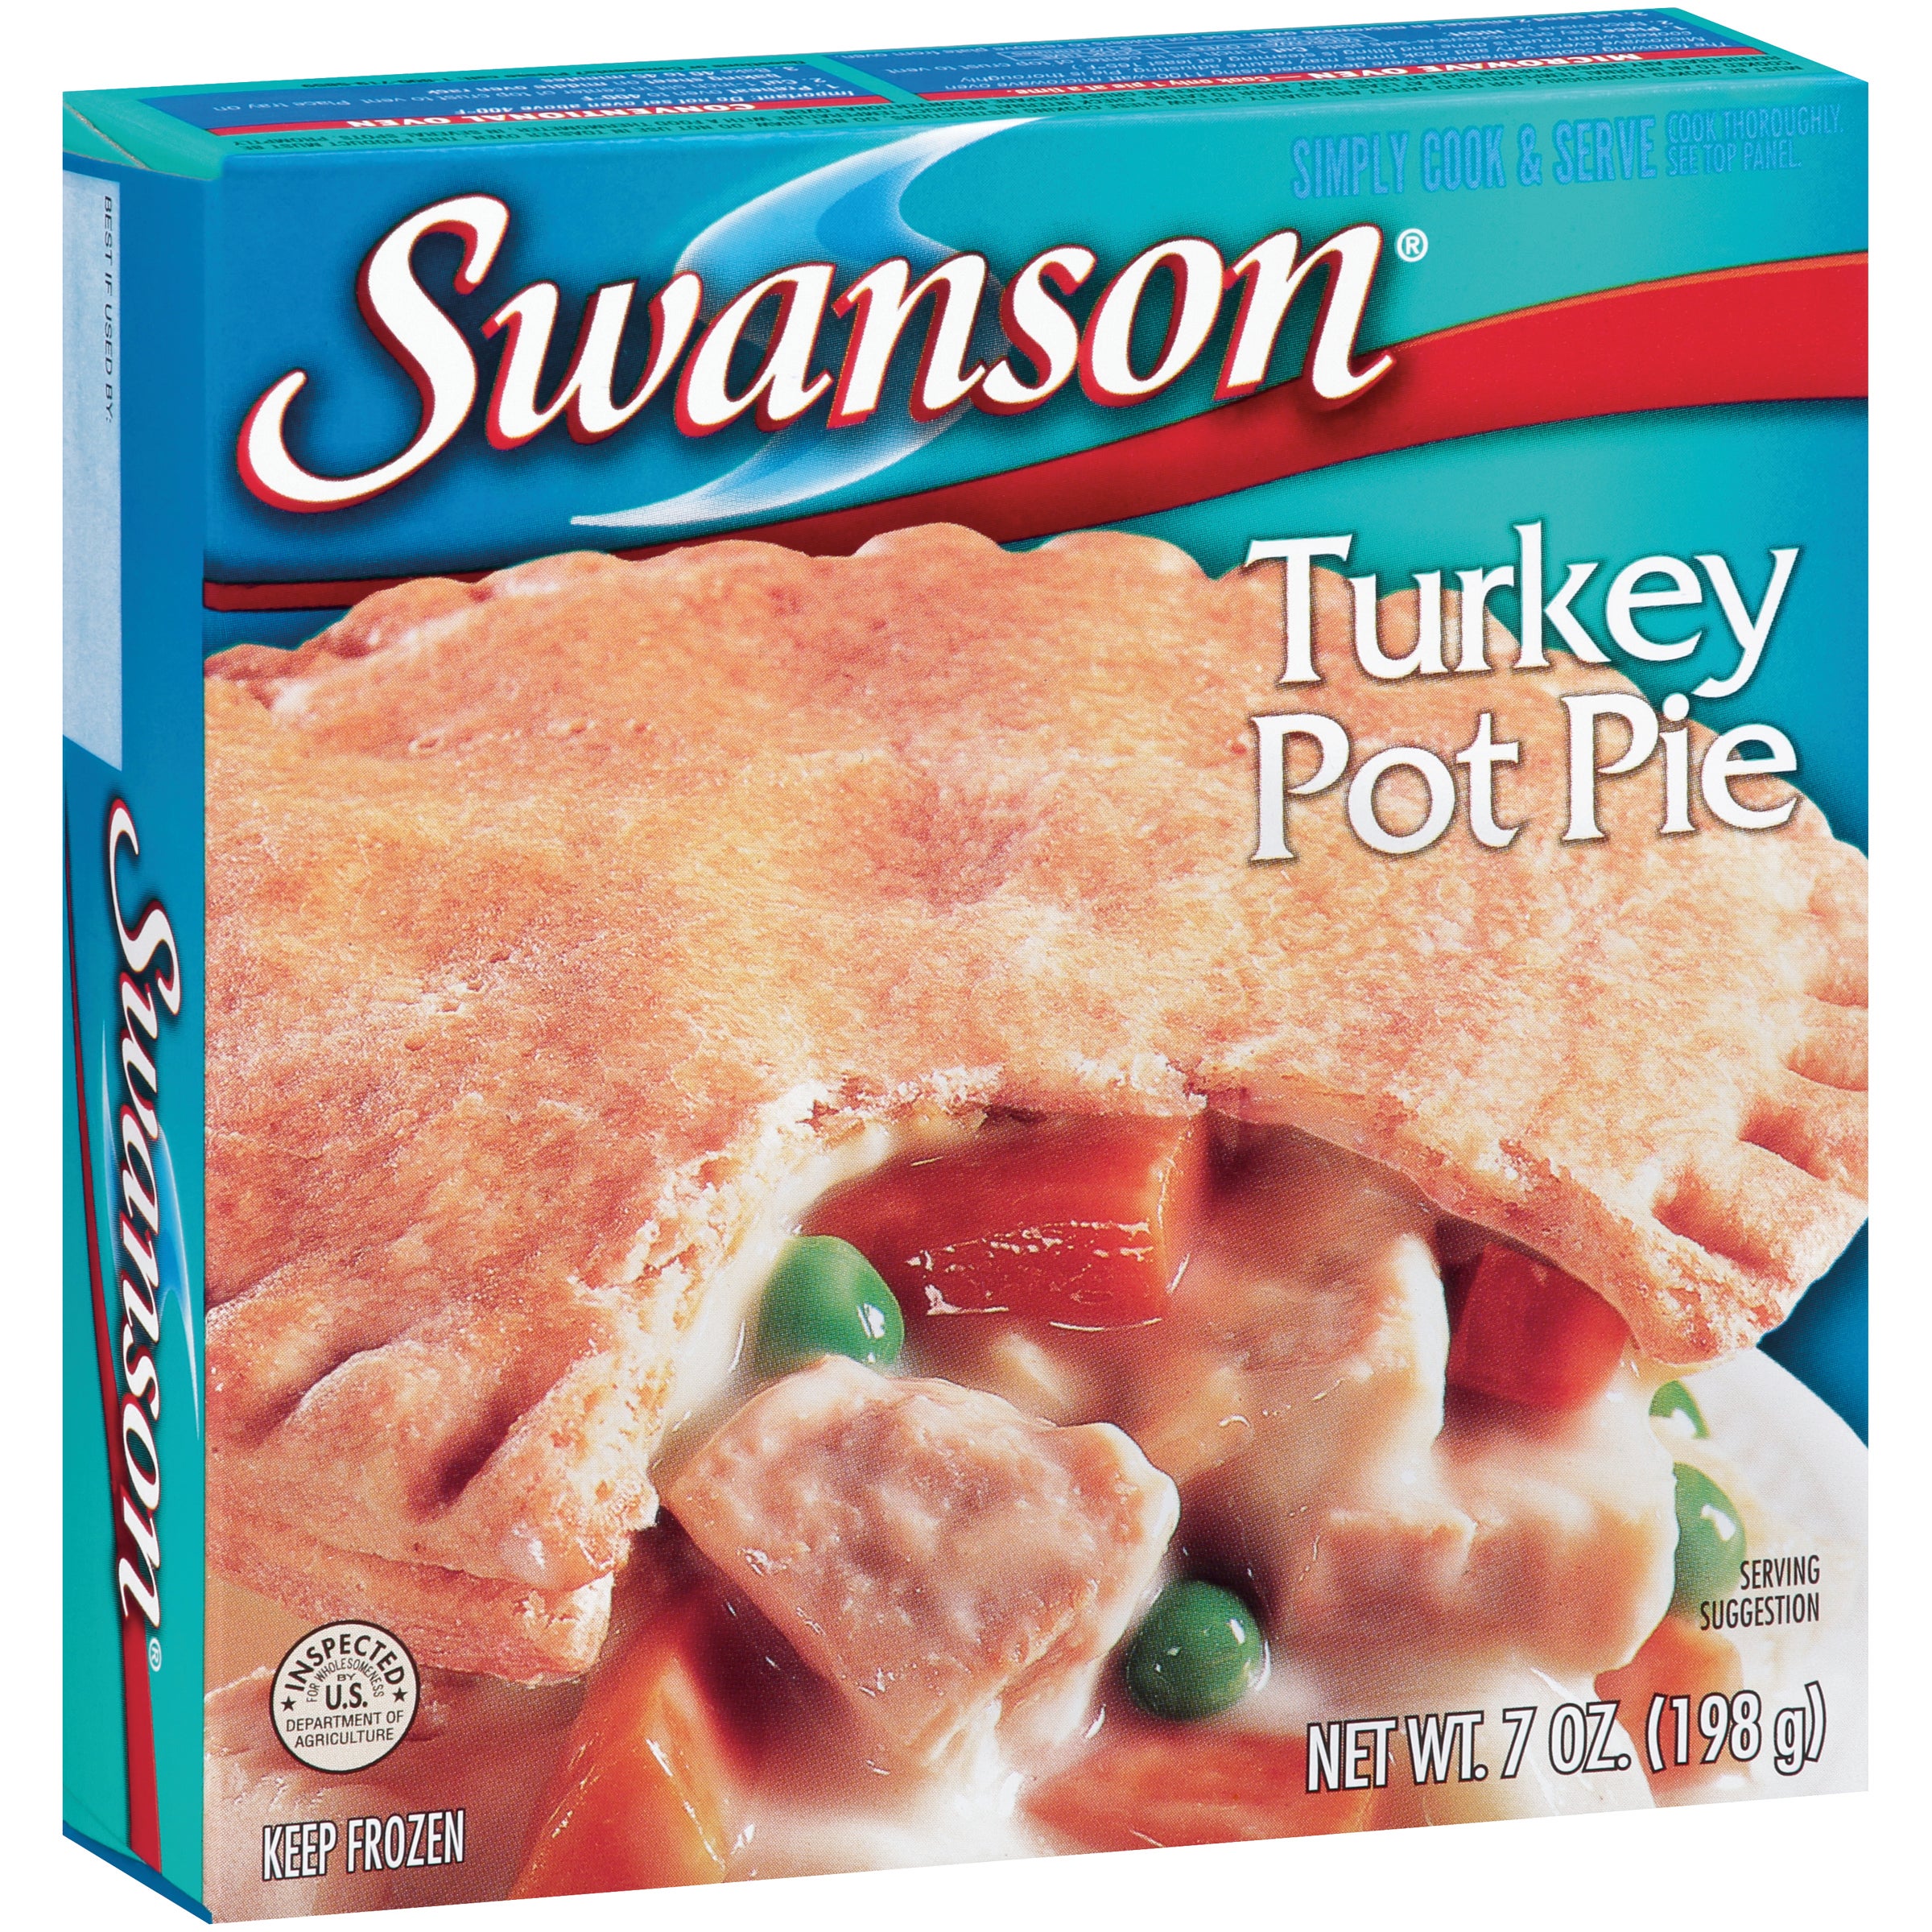 Swanson Turkey Pot Pie